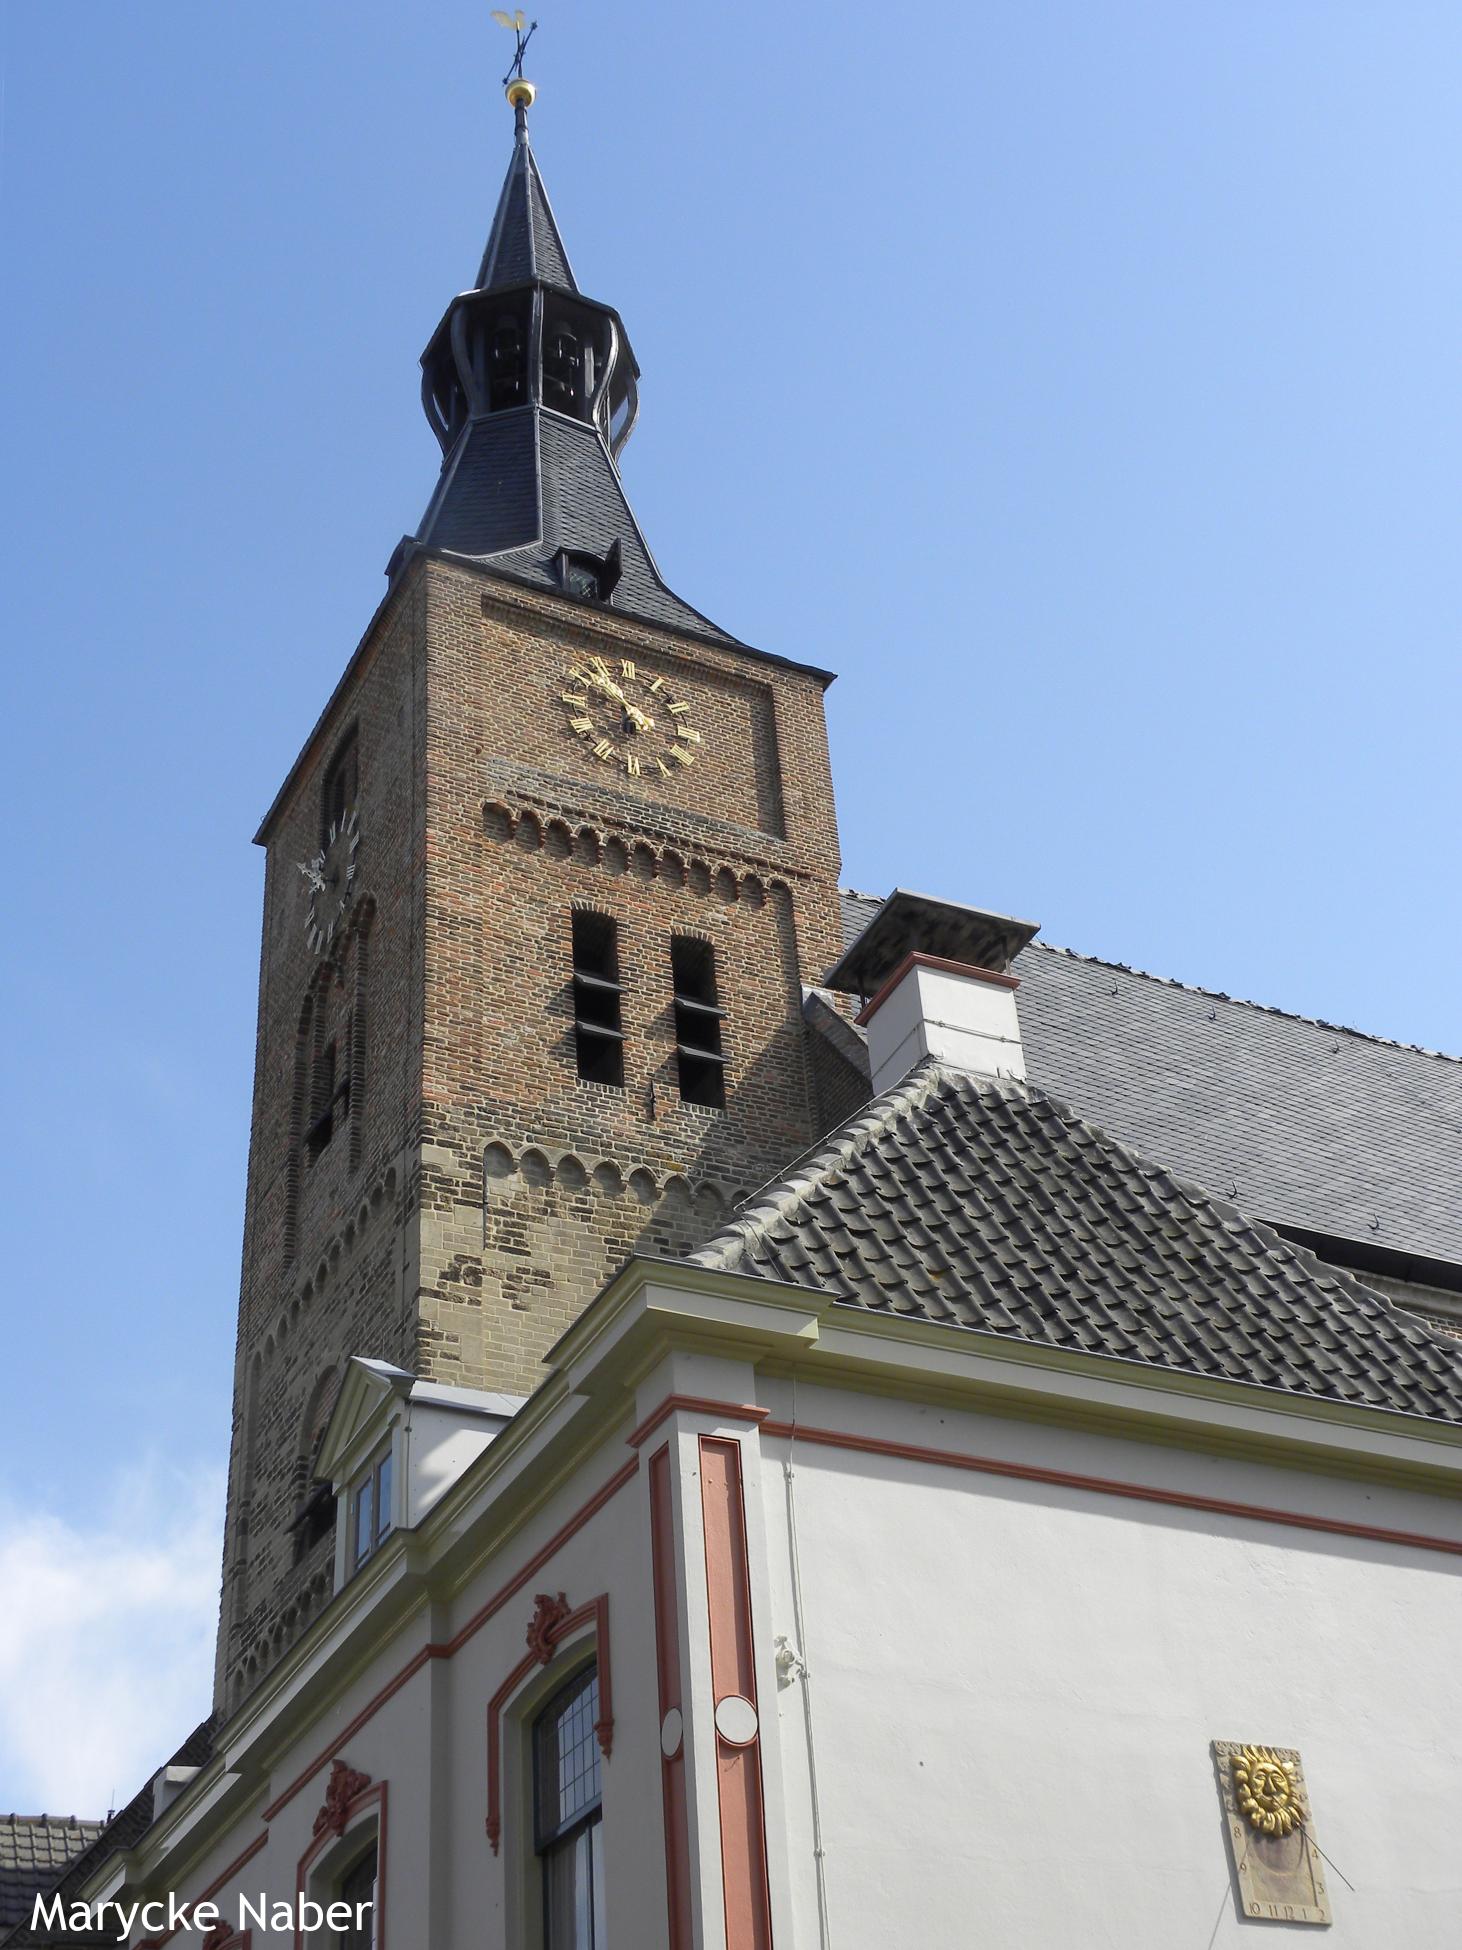 Grote of Andreaskerk